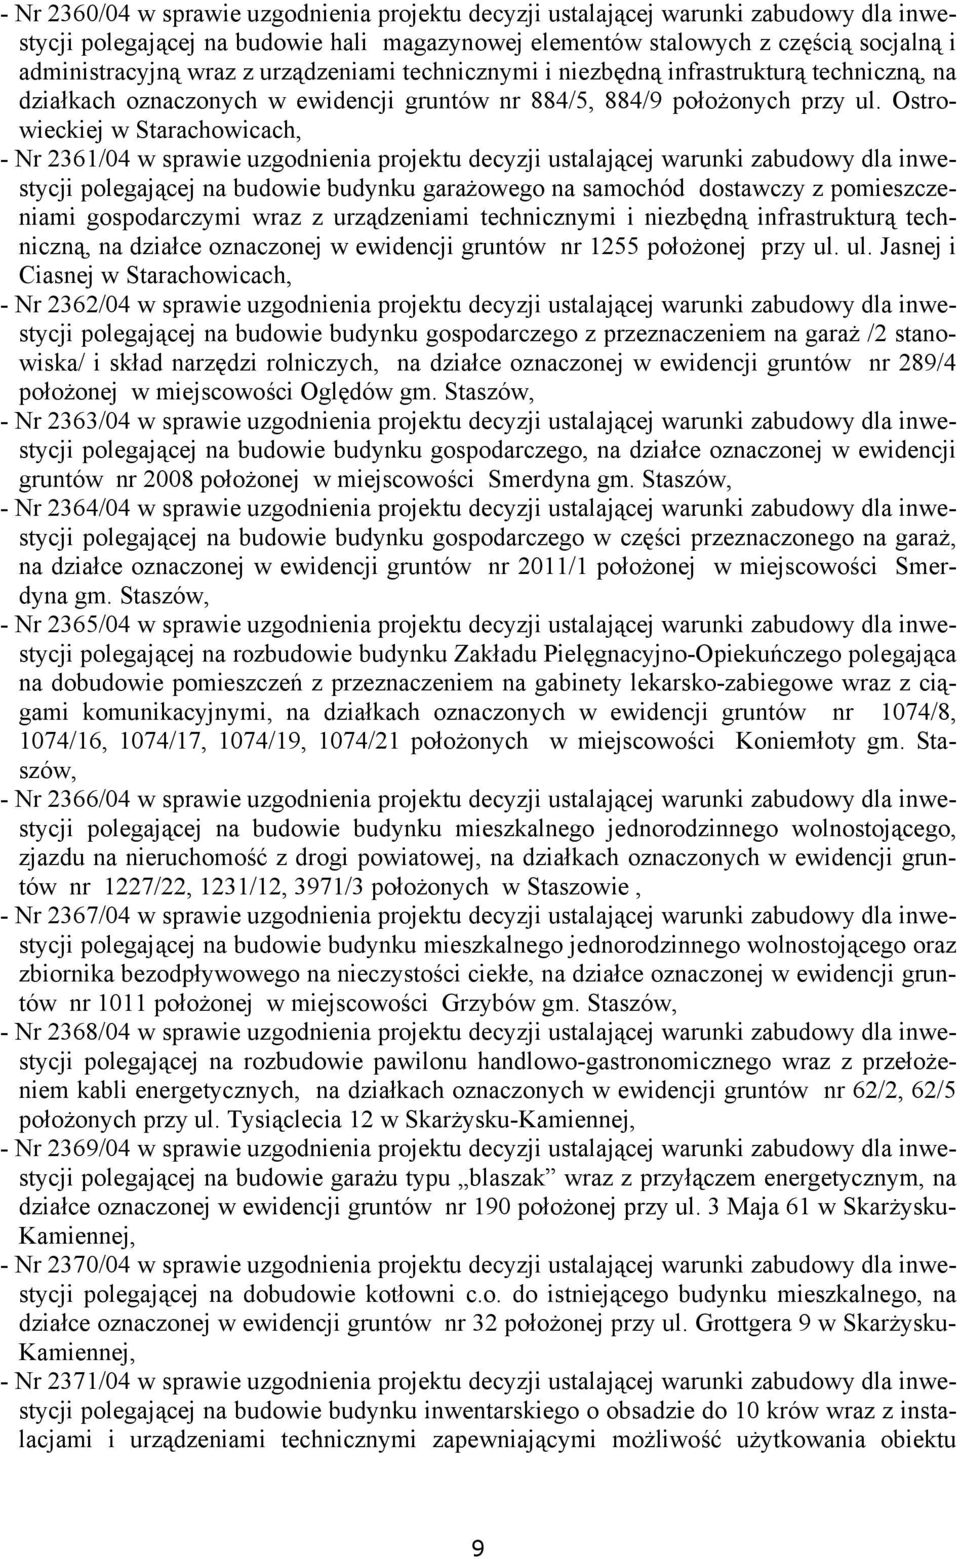 Ostrowieckiej w Starachowicach, - Nr 2361/04 w sprawie uzgodnienia projektu decyzji ustalającej warunki zabudowy dla inwestycji polegającej na budowie budynku garażowego na samochód dostawczy z